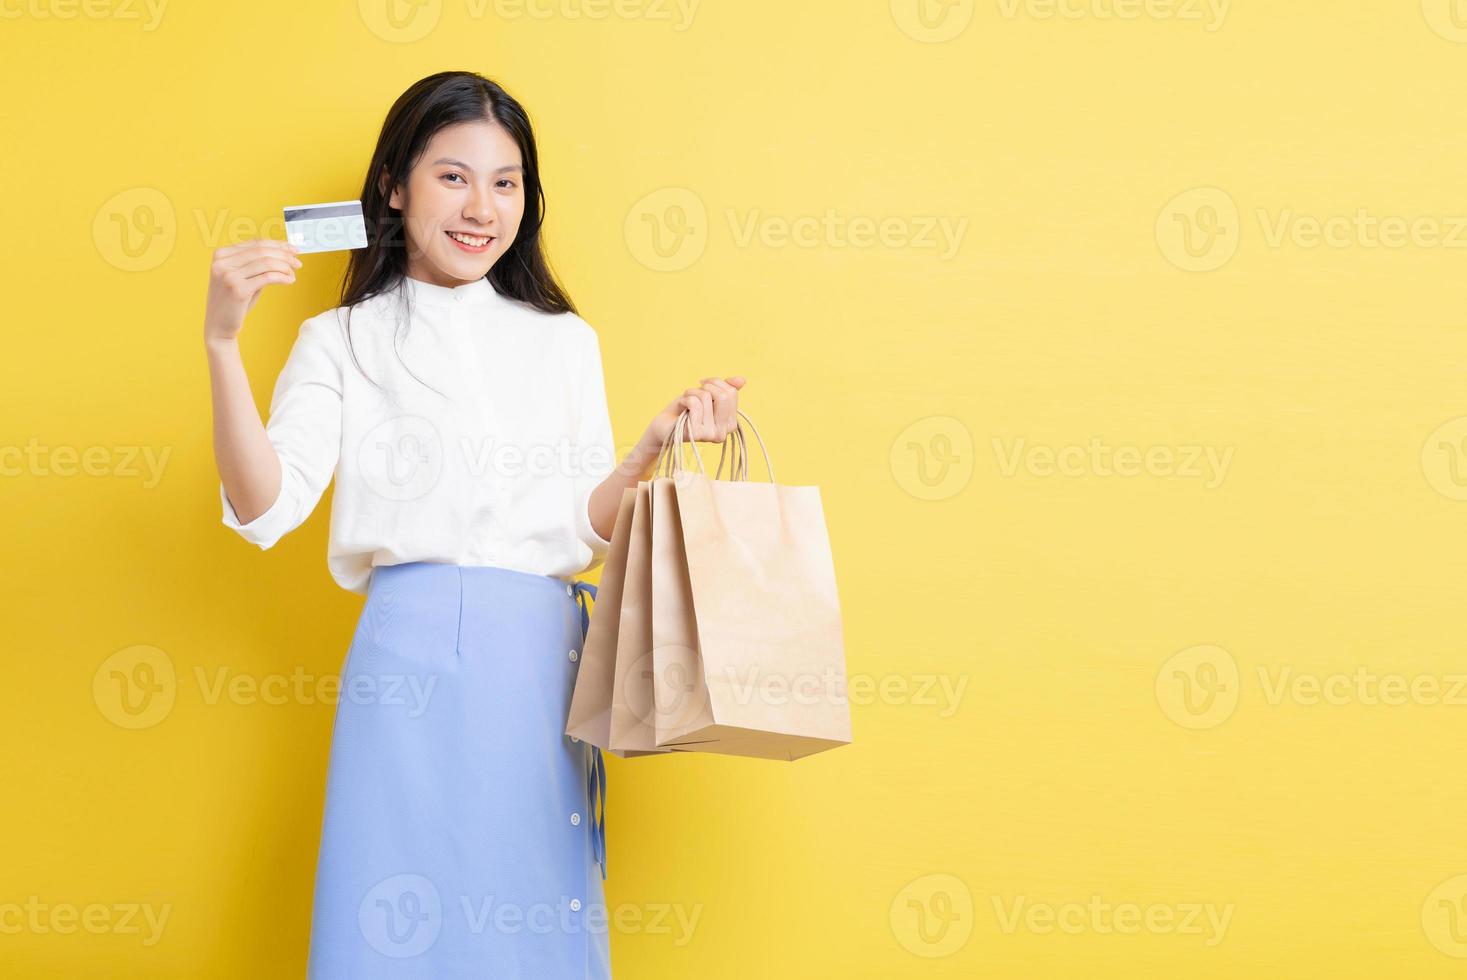 jovem segurando uma sacola de compras com uma cara feliz foto